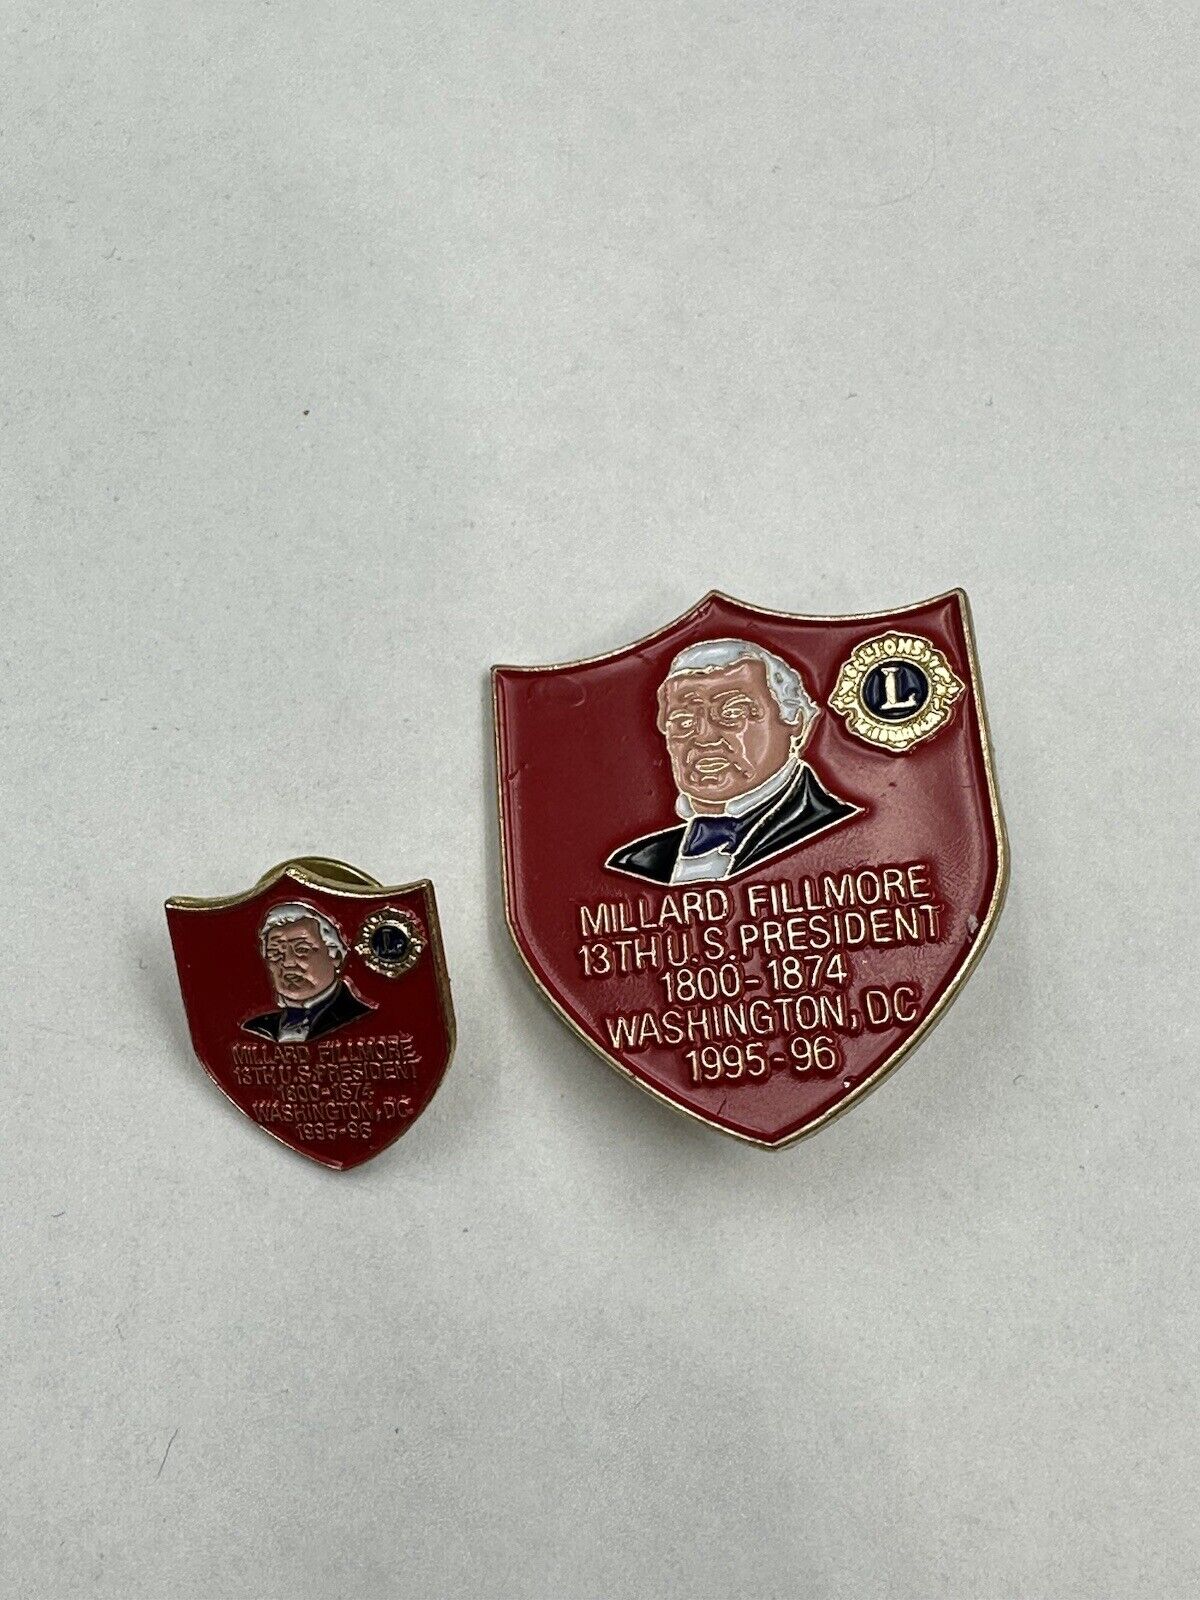 Millard Fillmore 13th US President Lions Club Pin 1995-1996 With Prestige Pin